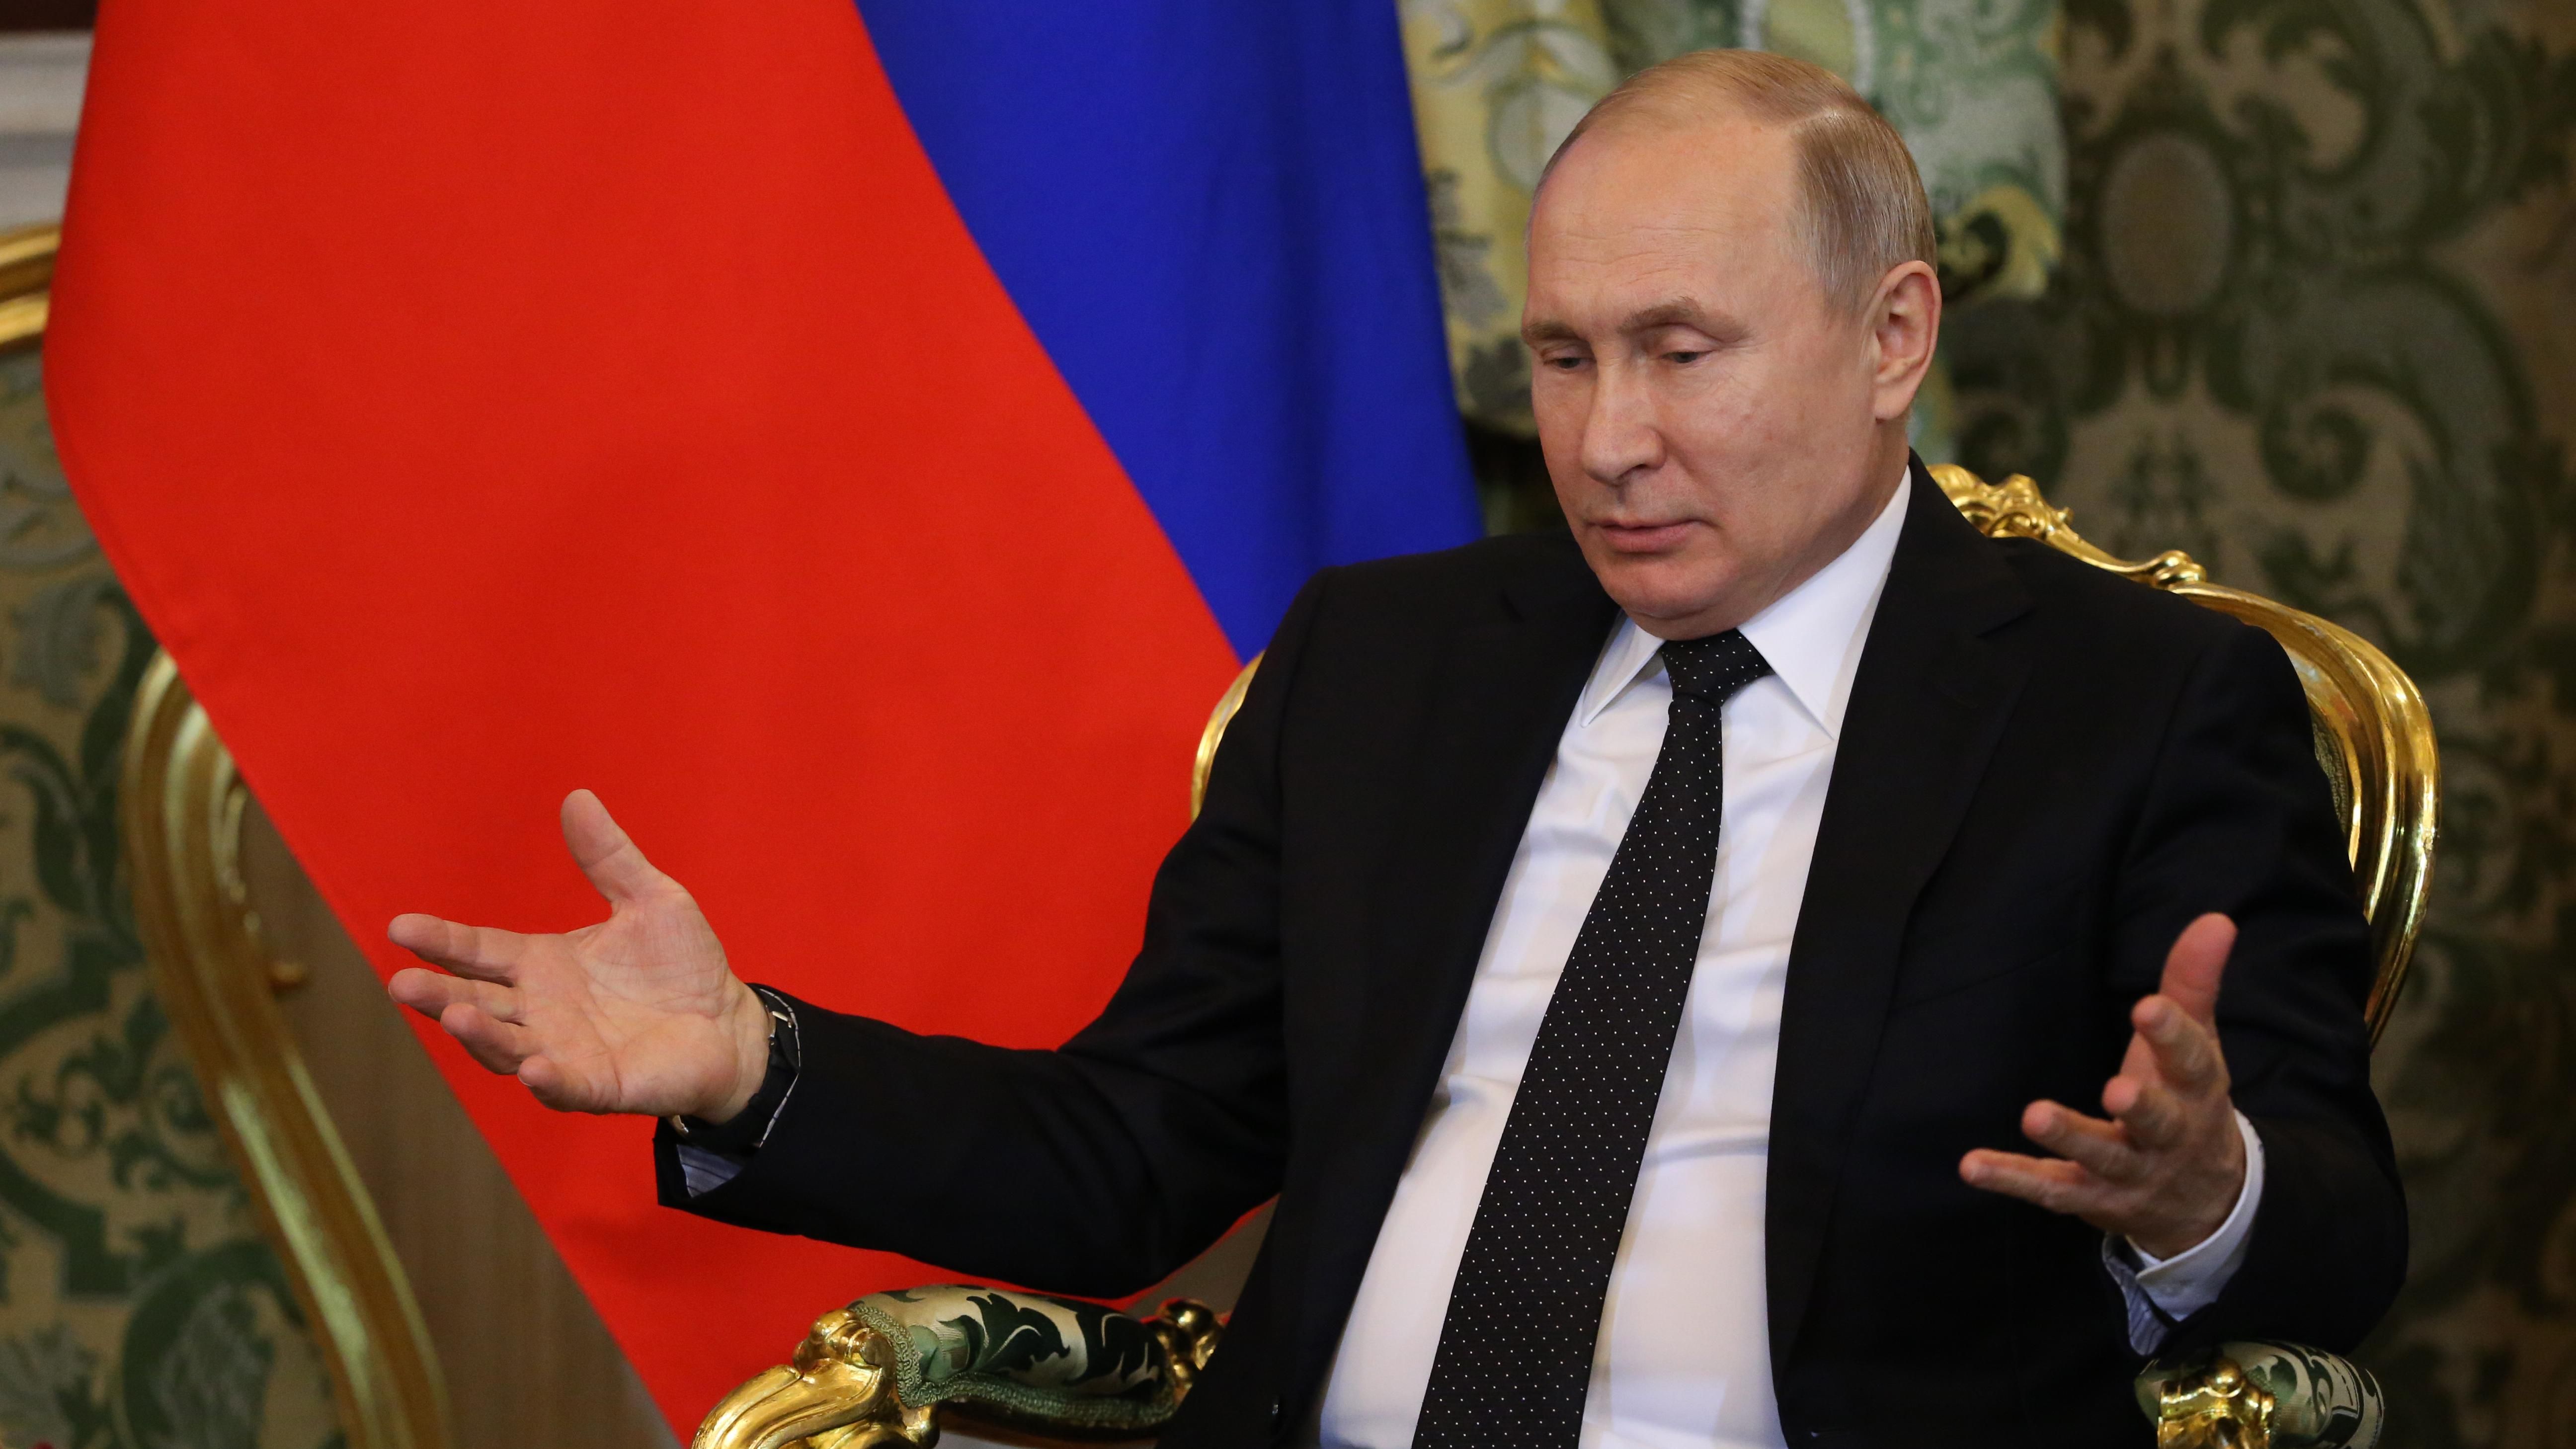 Каким состоянием владеет Путин и его ближайшее окружение